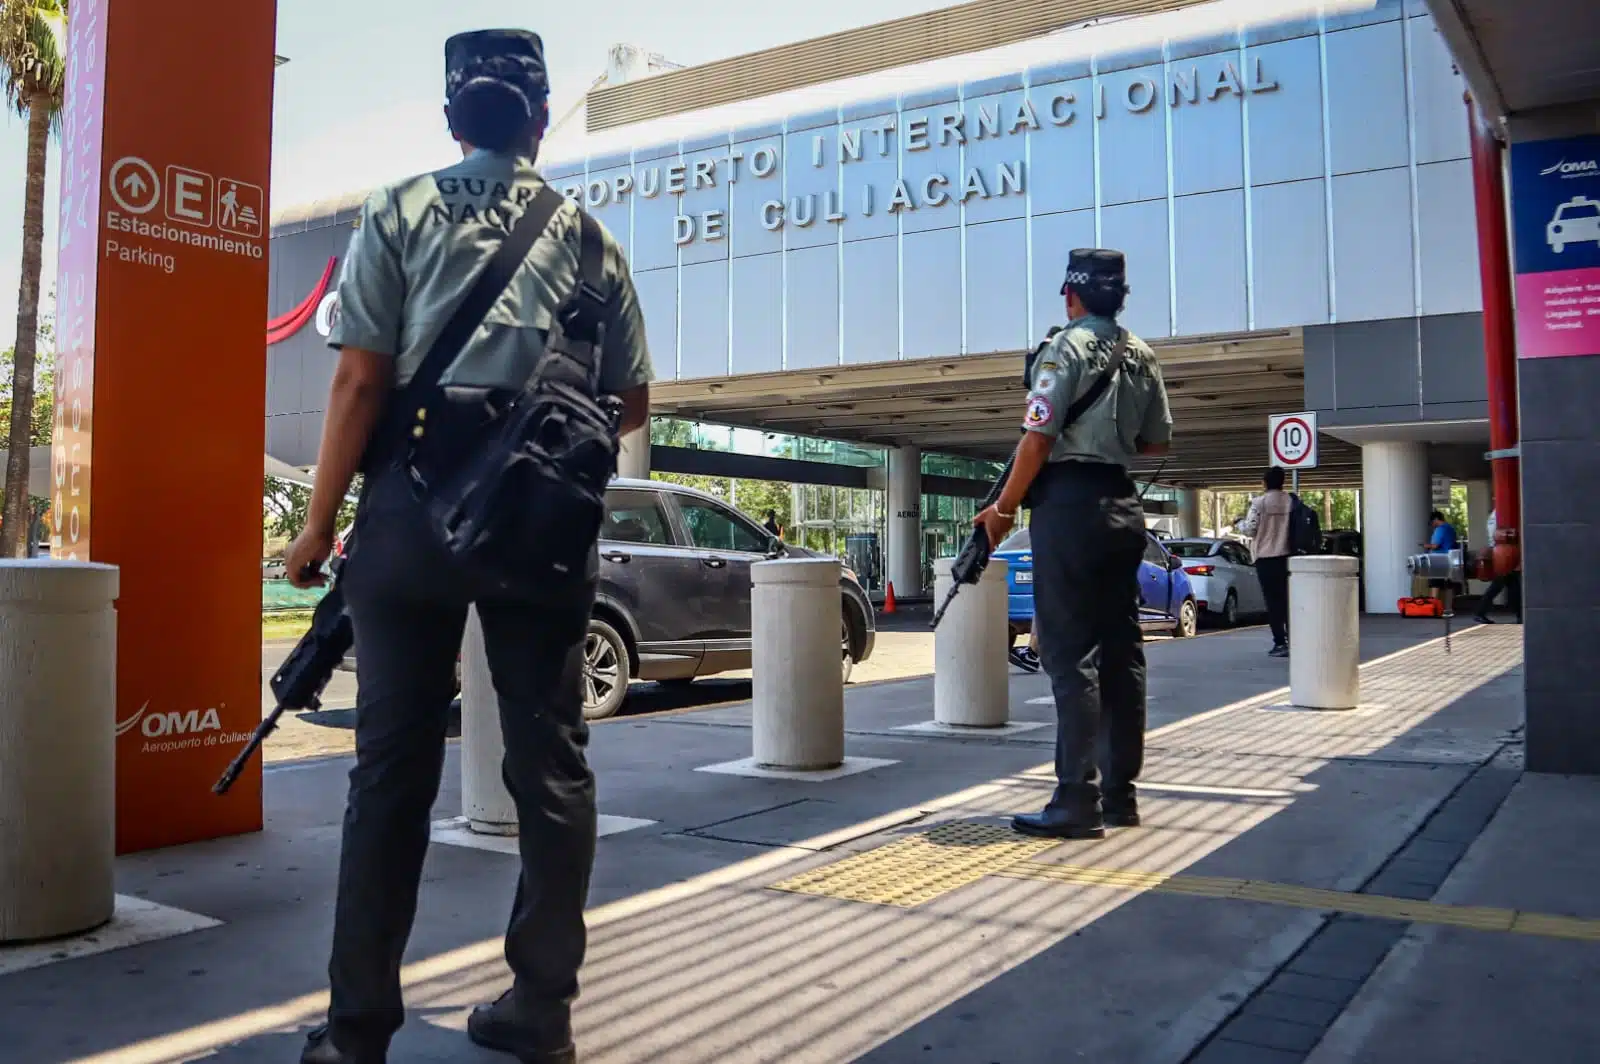 Agentes de la Guardia Nacional en el Aeropuerto Internacional de Culiacán